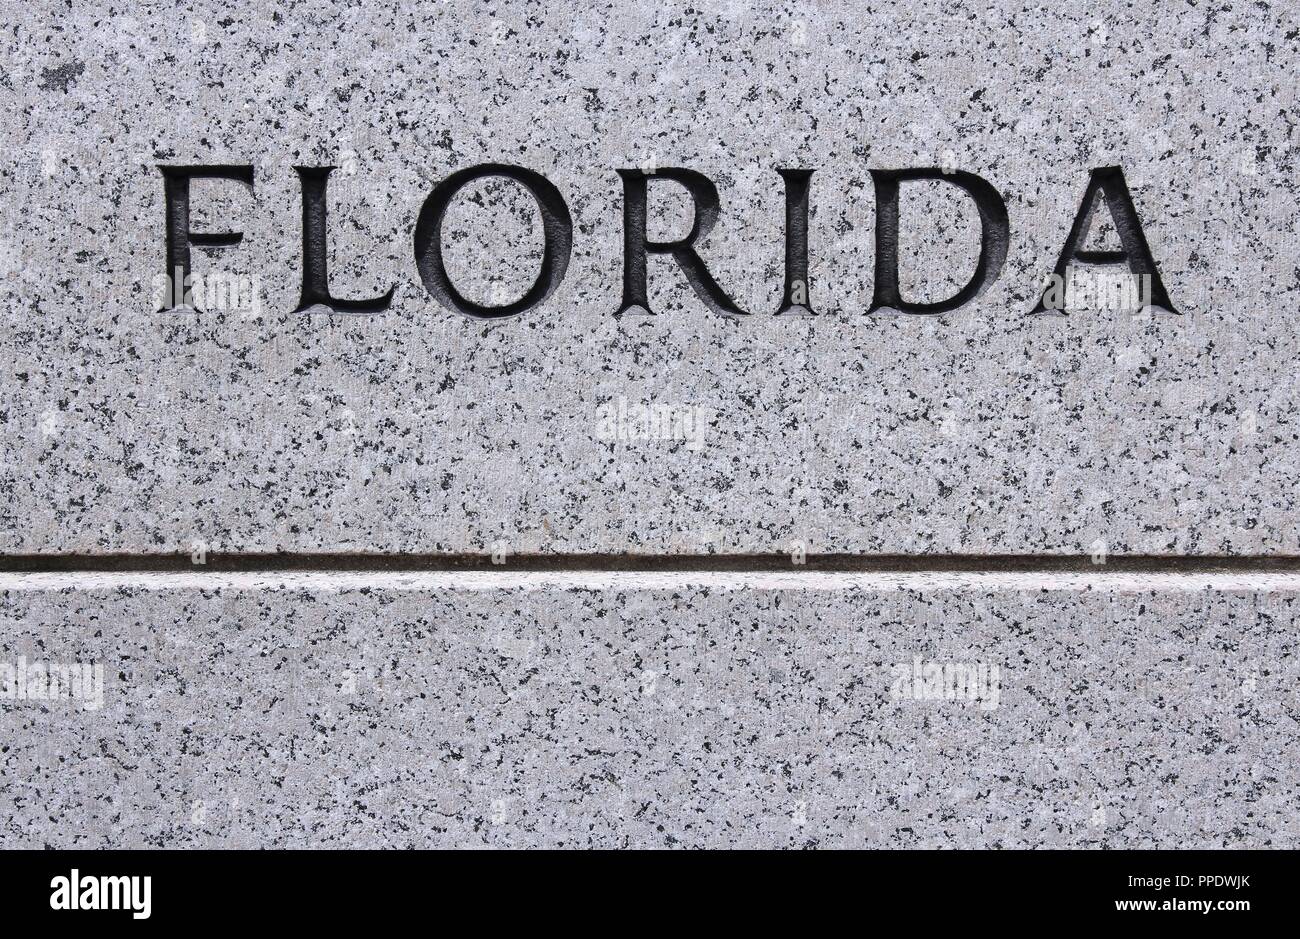 Florida - US state name carved in grey granite stone Stock Photo